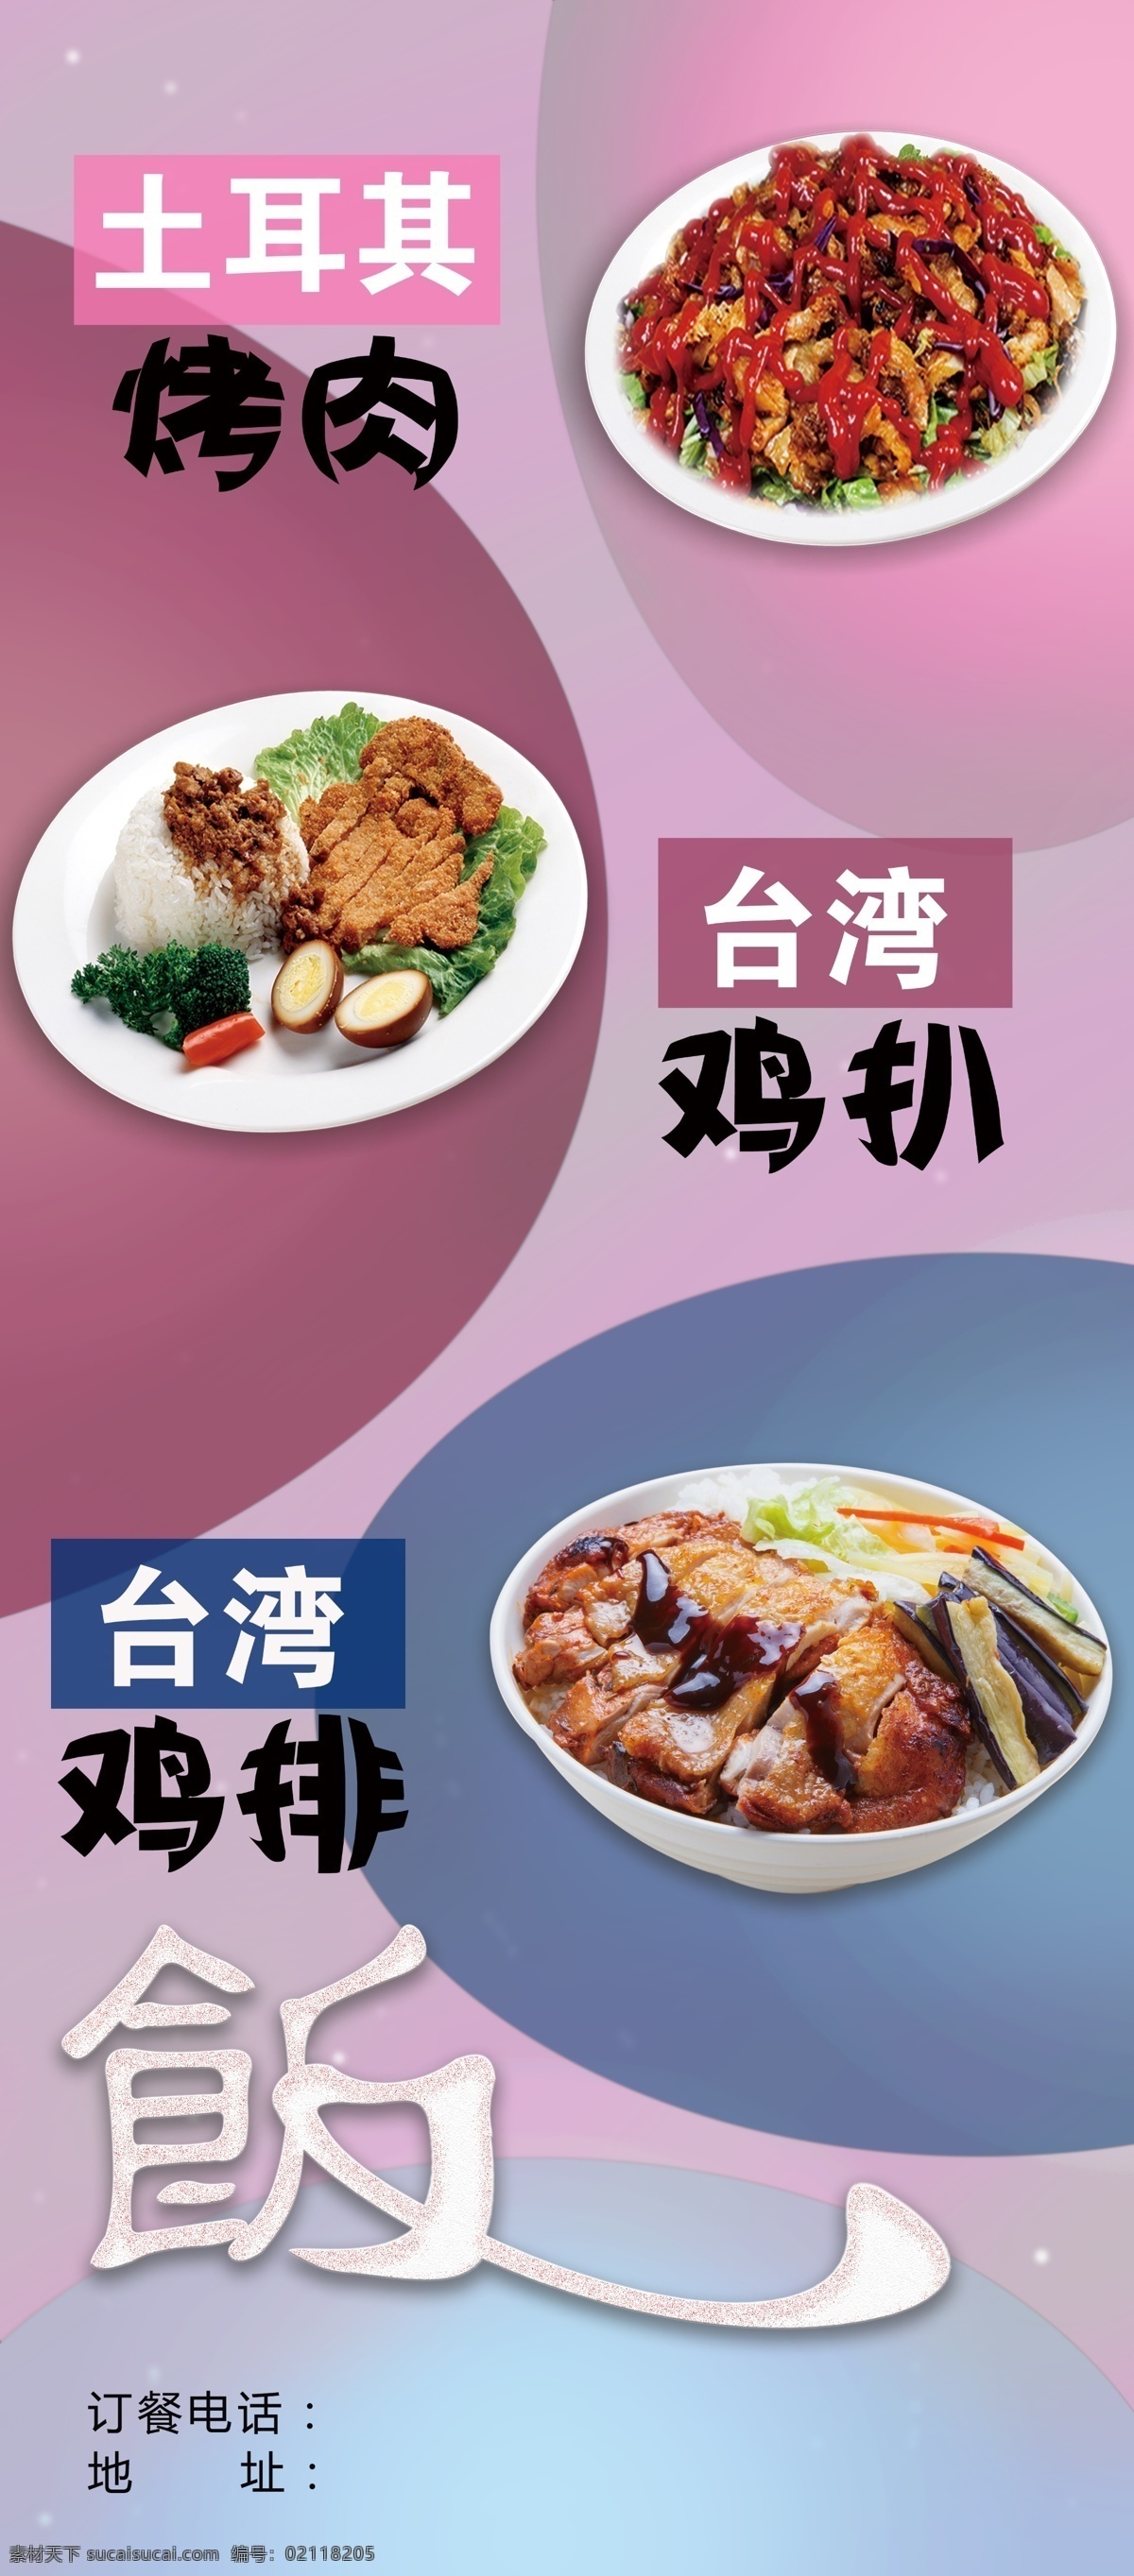 饭馆展架 土耳其烤肉饭 台湾鸡扒 台湾 鸡排 展架 海报 好了 分层